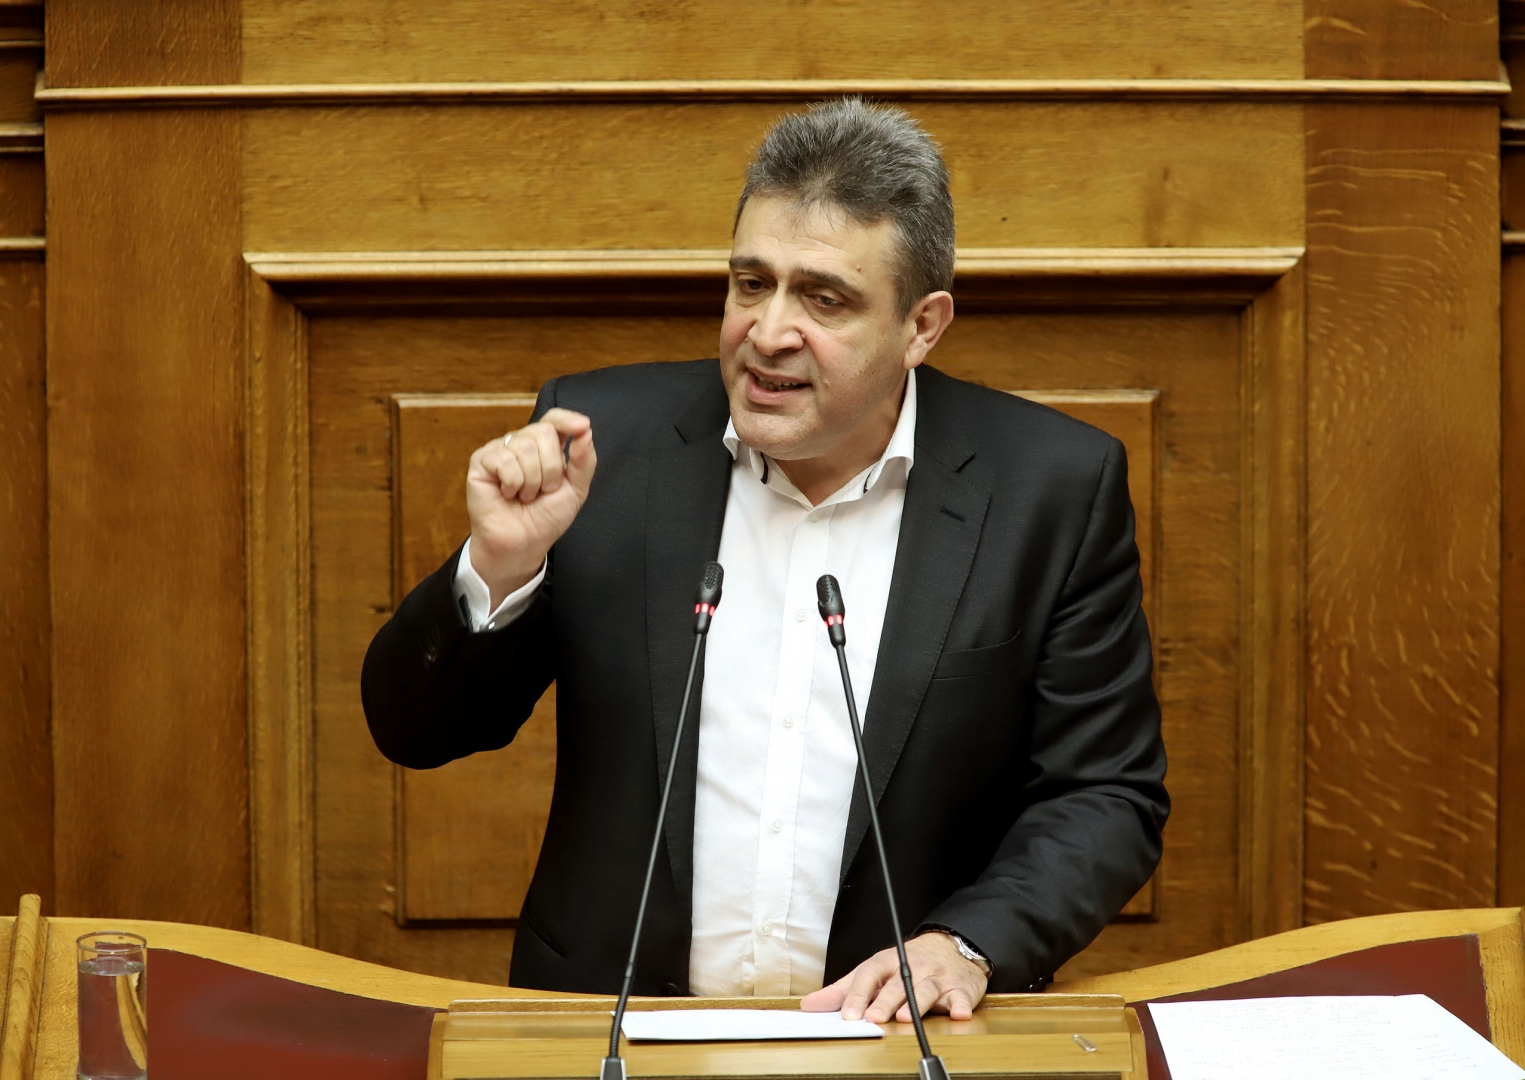 Ν. Ηγουμενίδης: Ο Κυριάκος Μητσοτάκης δεν μπορεί να συνυπογράφει απλώς κείμενα άλλων ηγετών - Οφείλει να πάρει πρωτοβουλίες